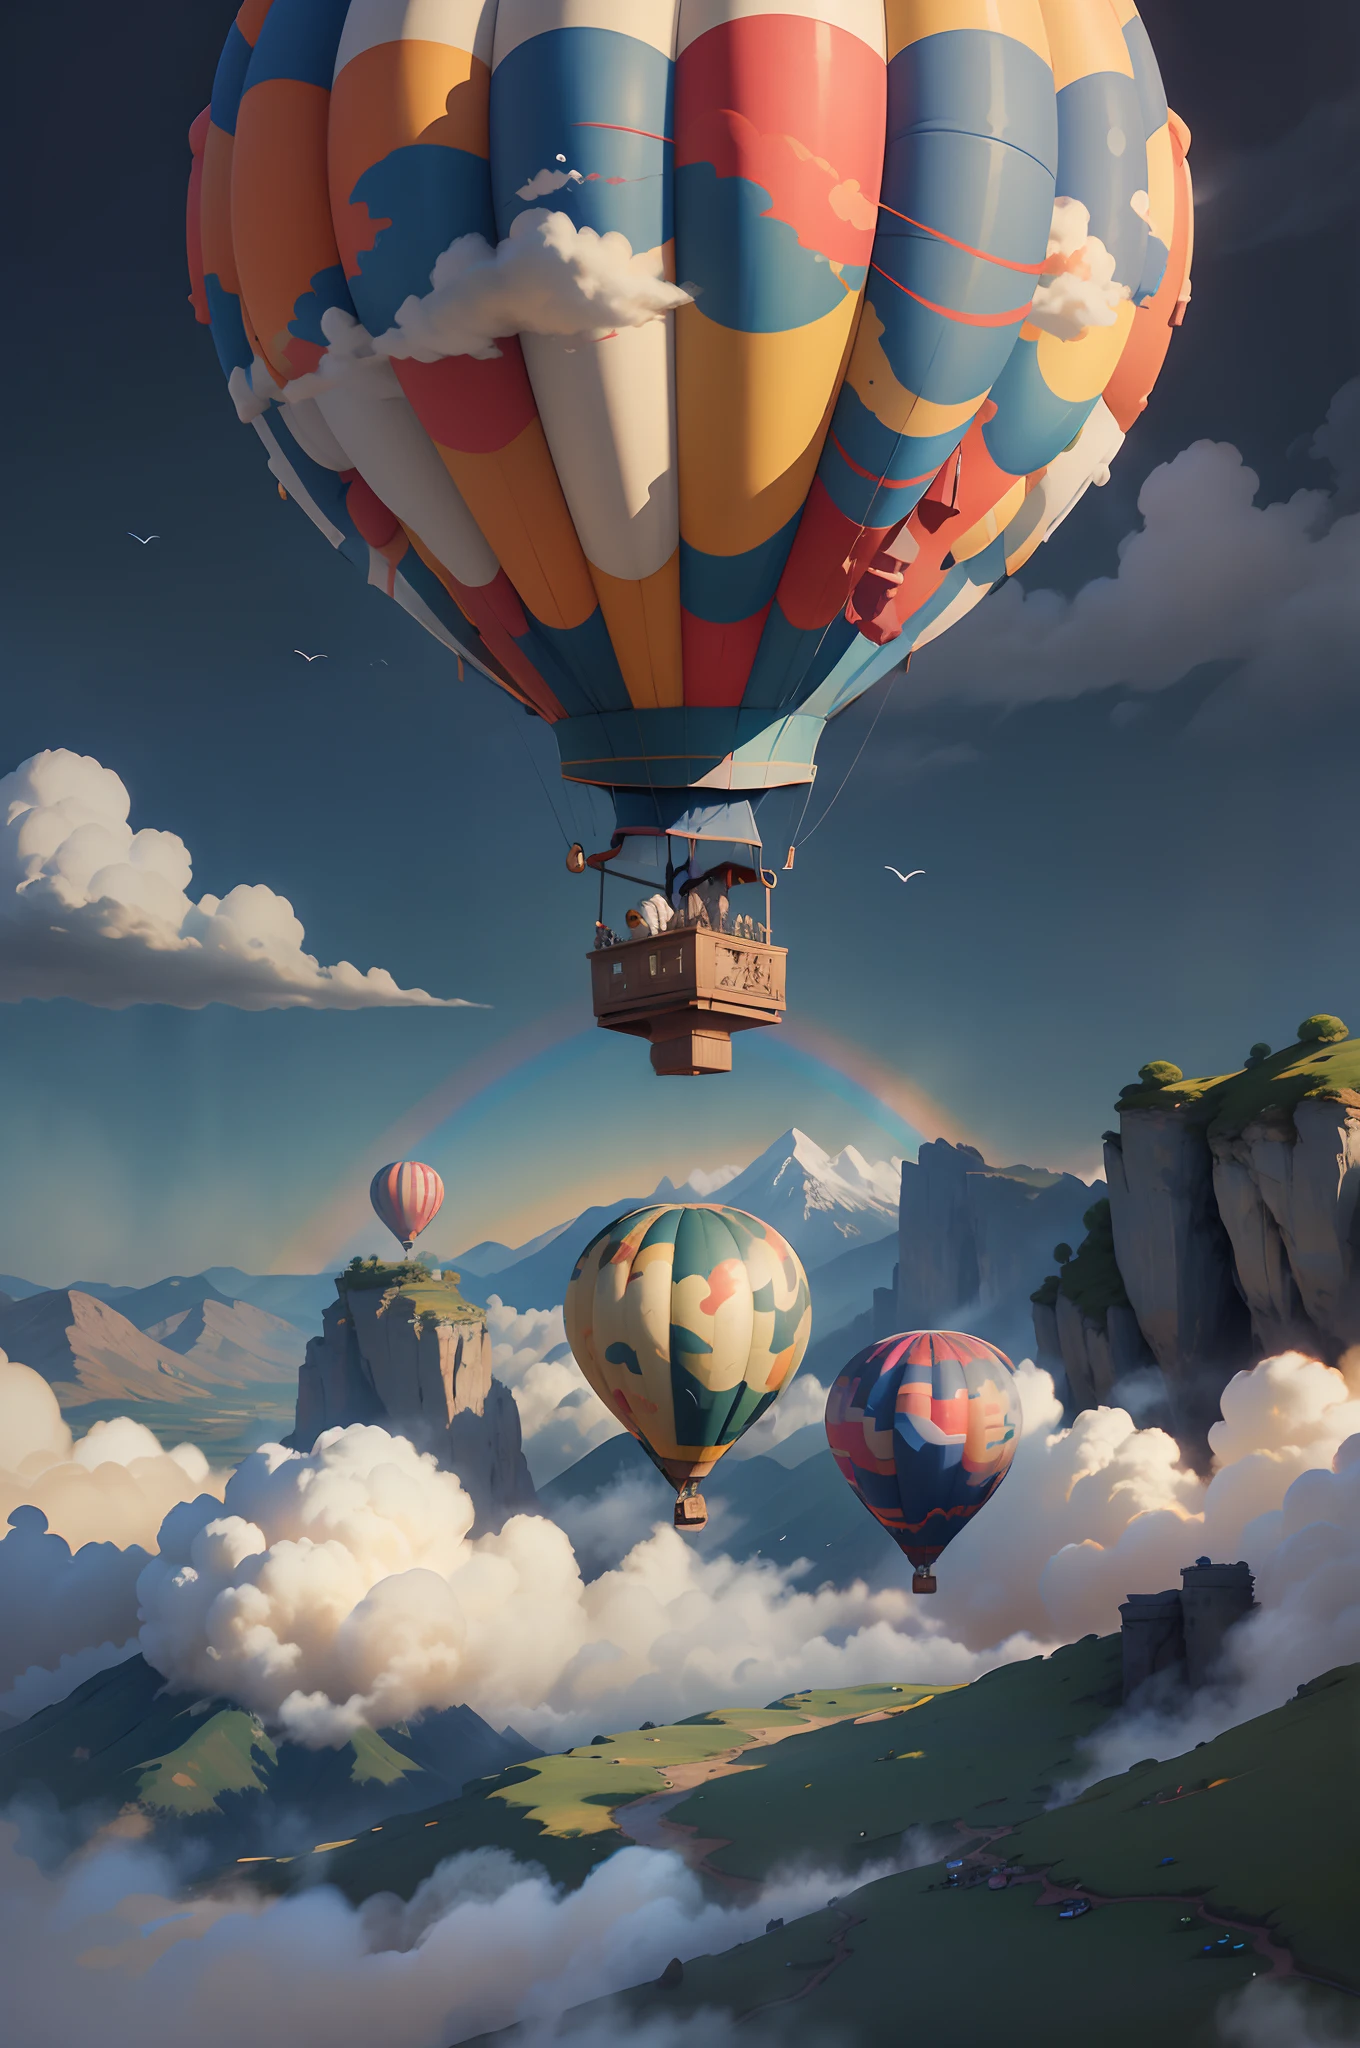 详细信息元素：彩色热气球、远处云雾缭绕、翱翔的鸟儿、阳光普照的草地、绚烂的彩虹